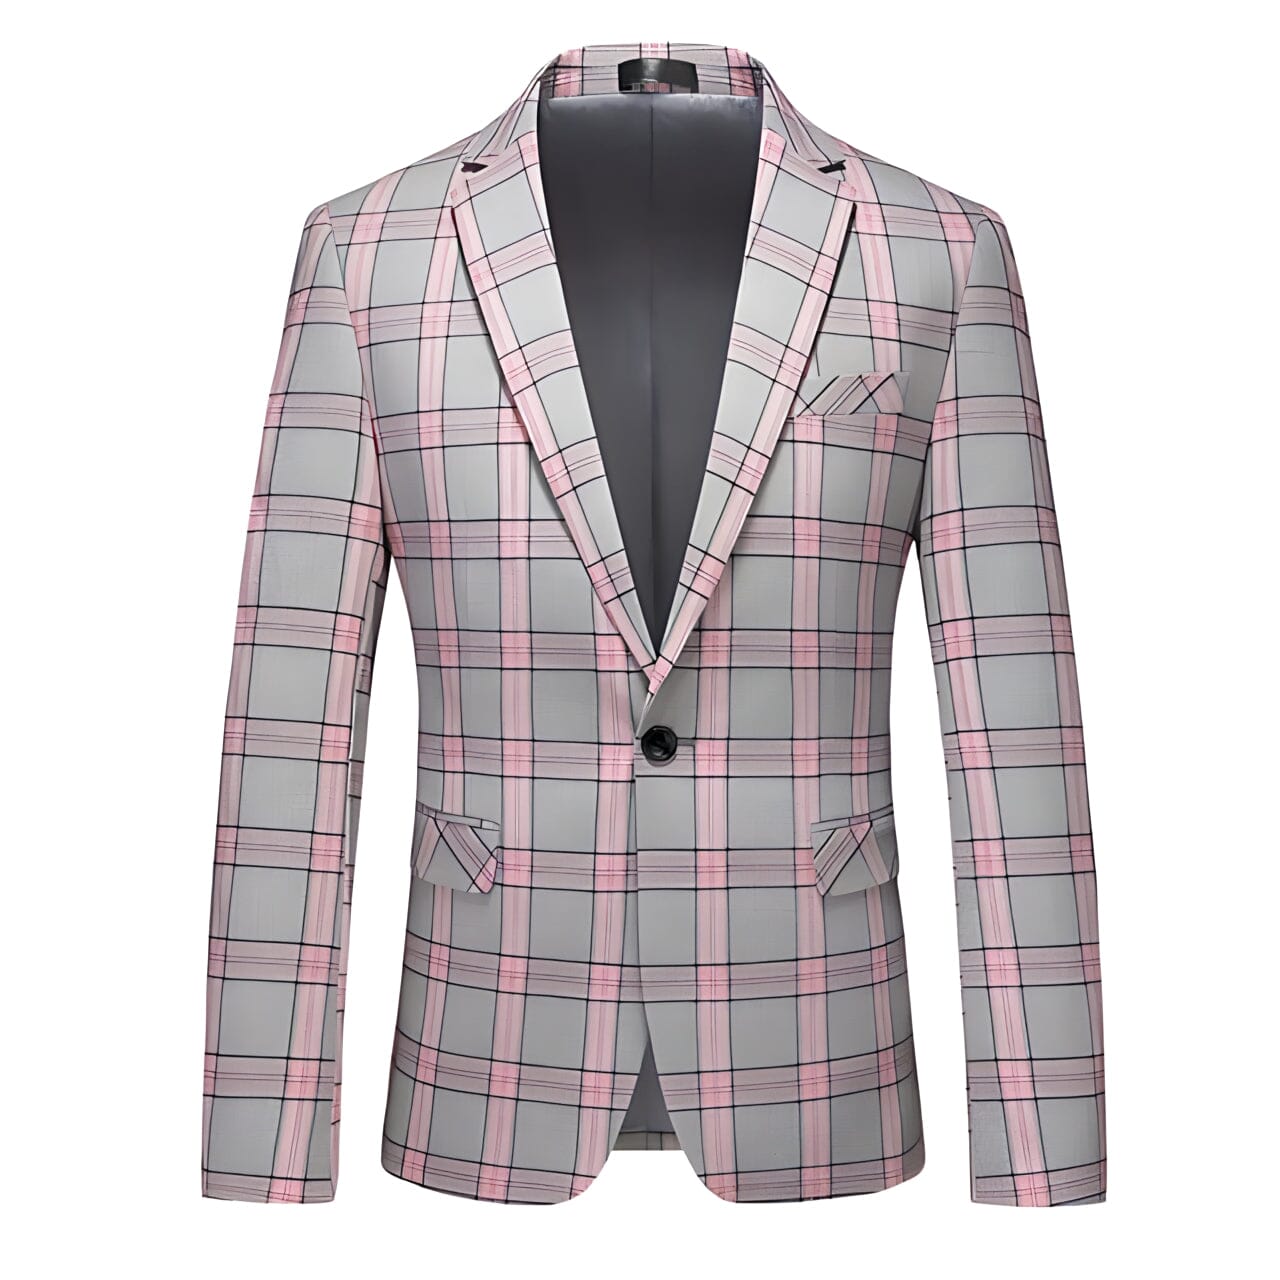 The Lain Plaid Slim Fit Blazer Suit Jacket - Multiple Colors WD Styles Pink XS 